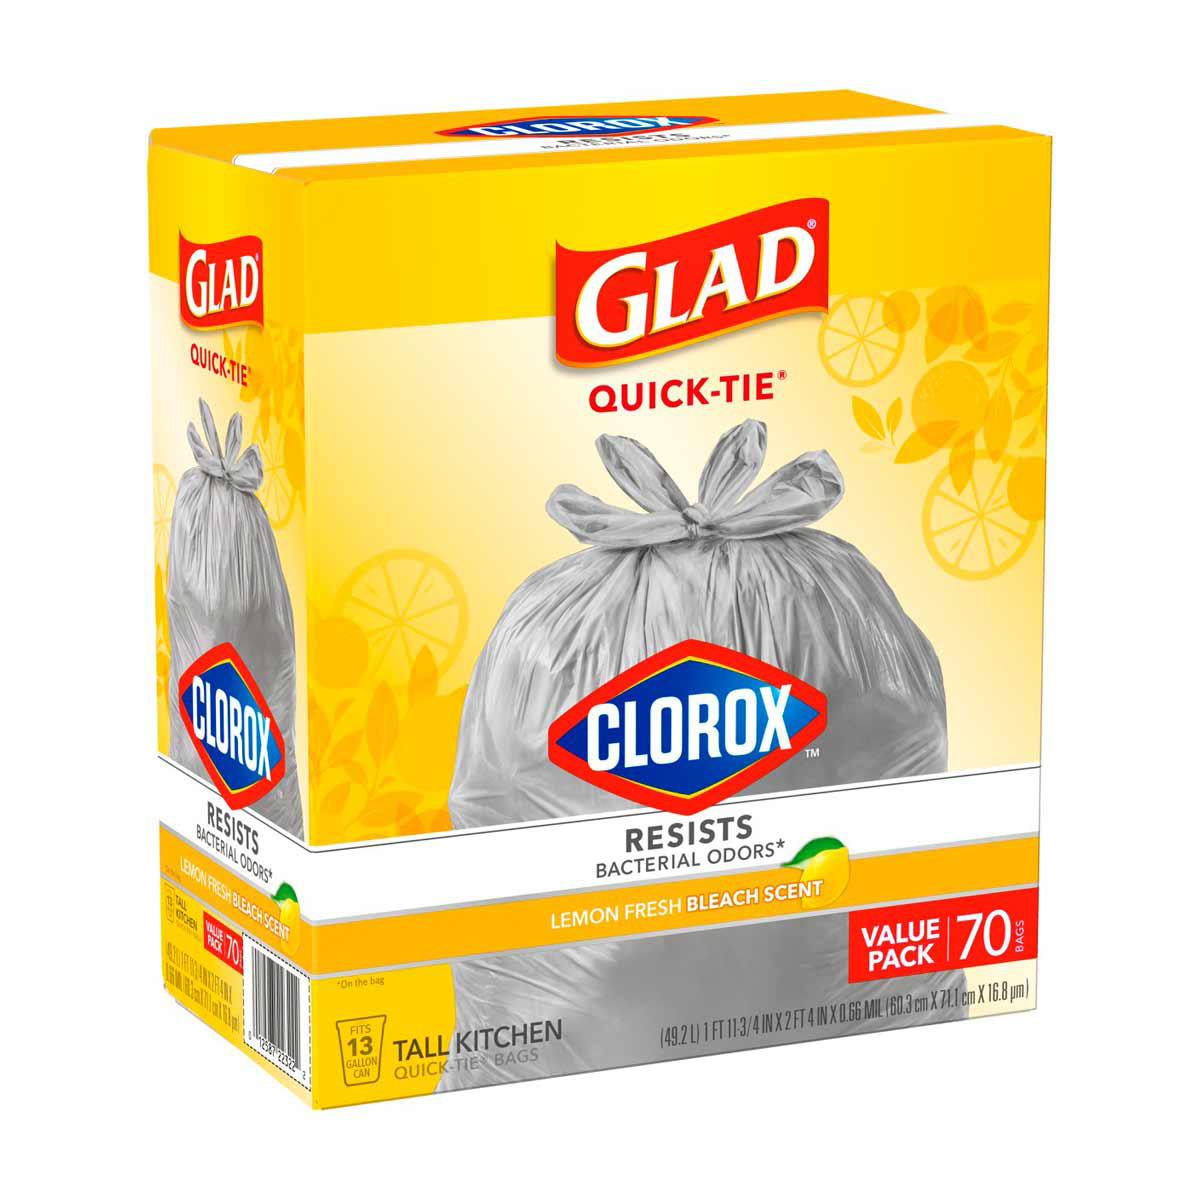  Clorox CLO 70313 Glad 30 x 33 Size, 1.1-mil